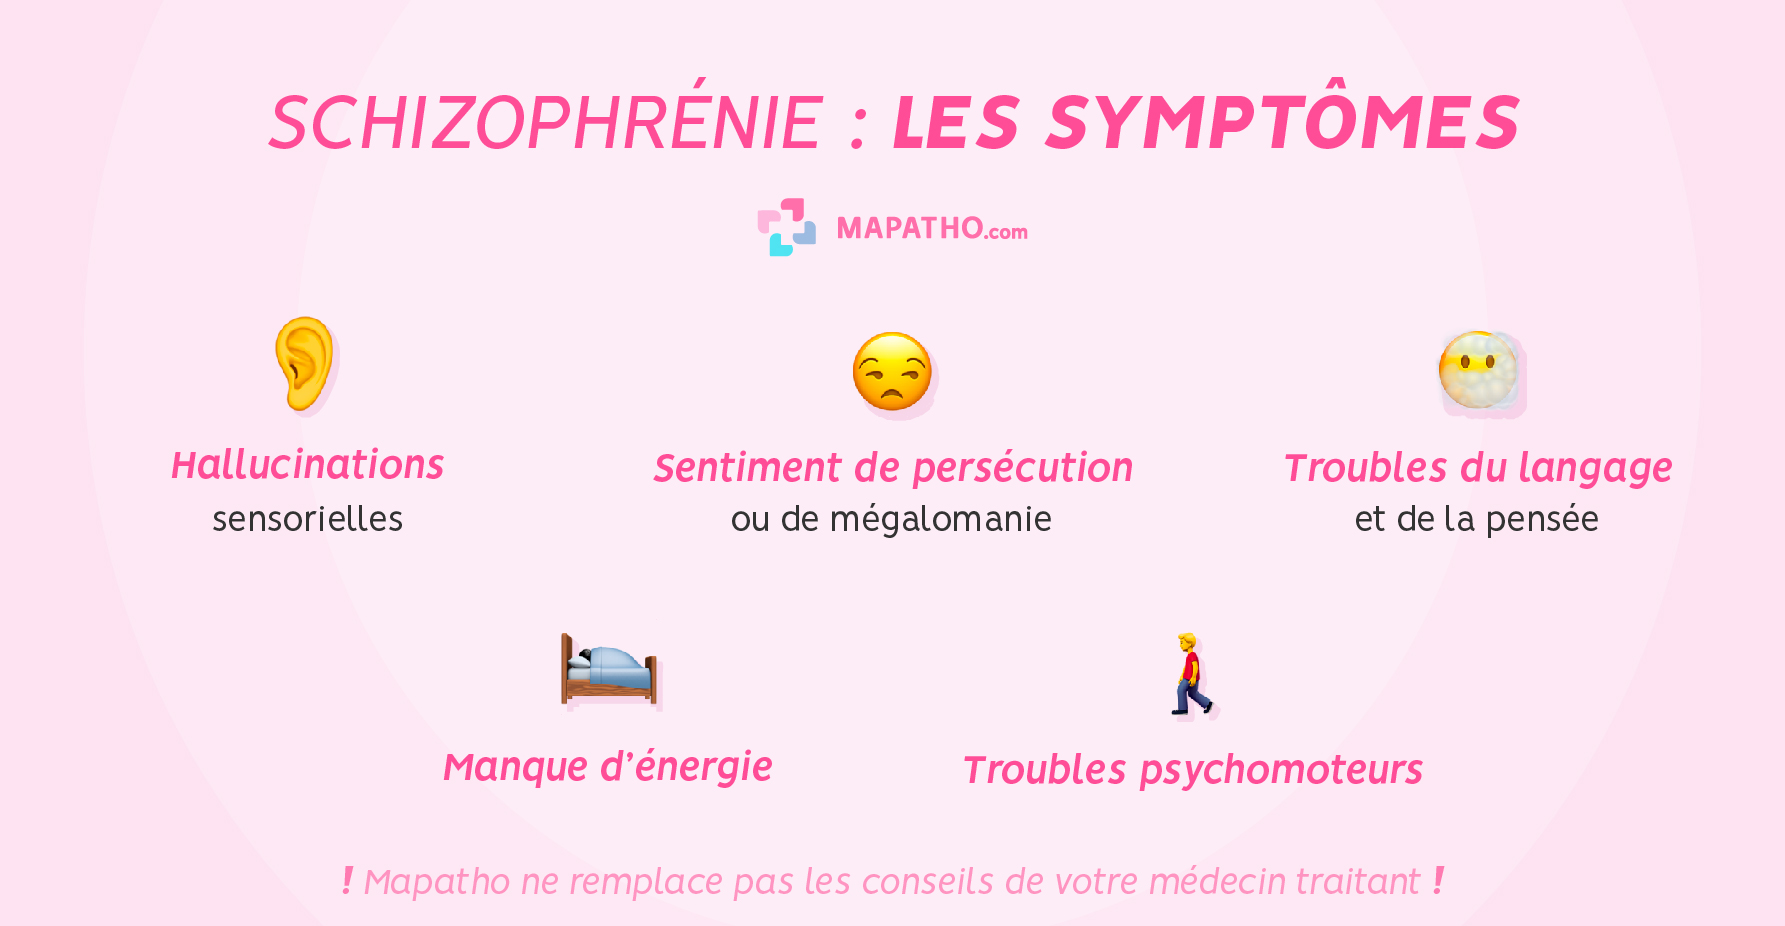 Les symptômes de la schizophrénie